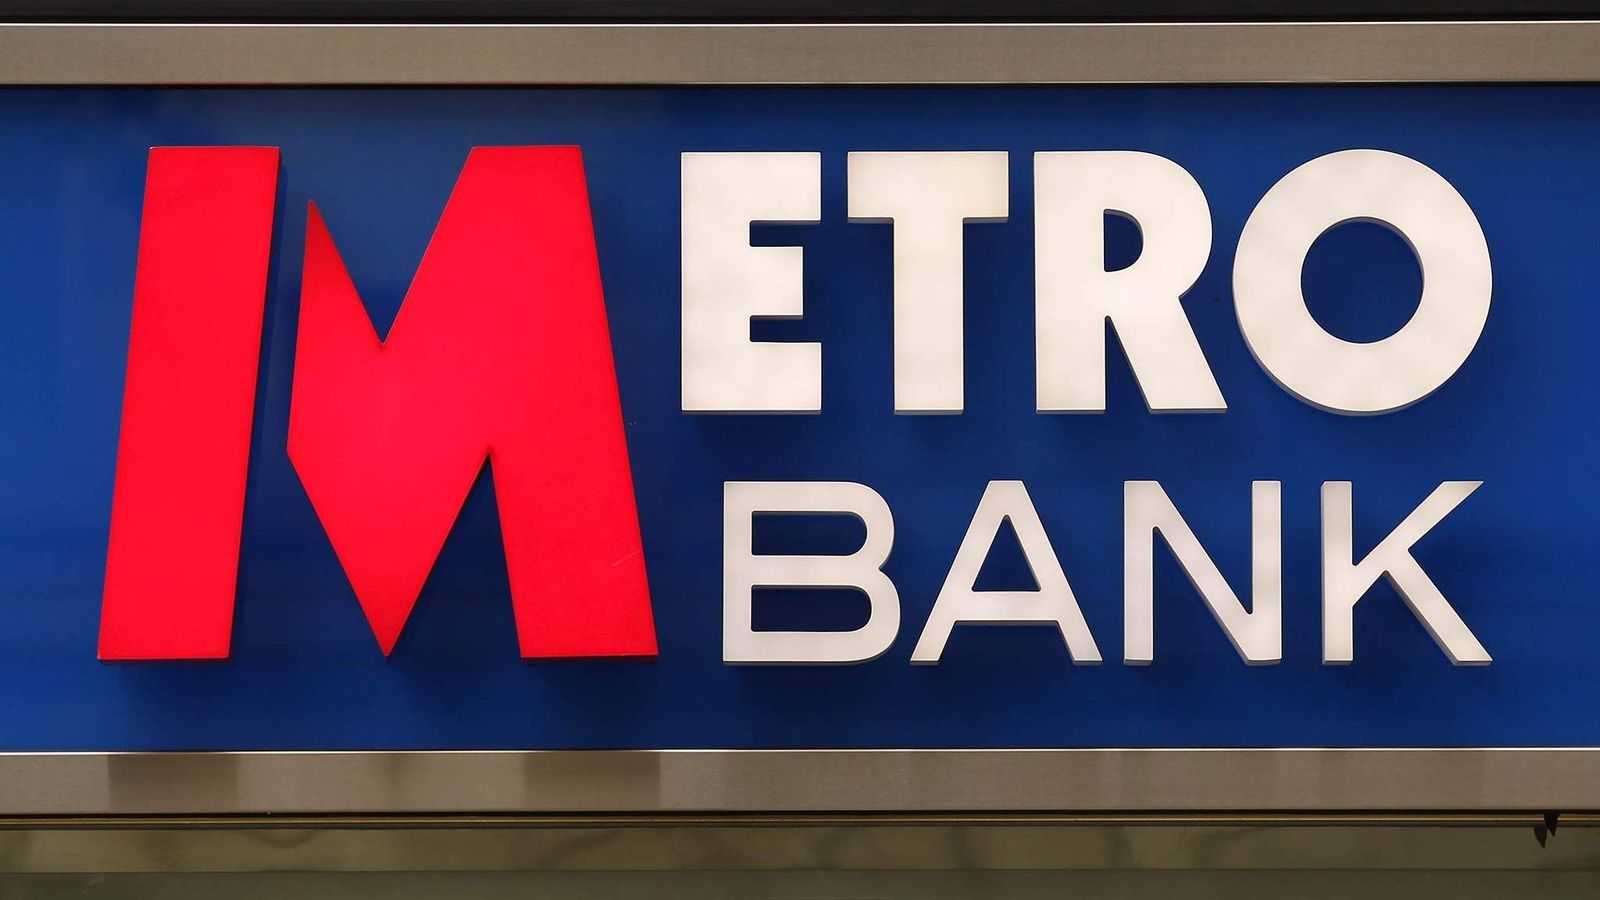 Metro Bank raises £925m through debt and funding